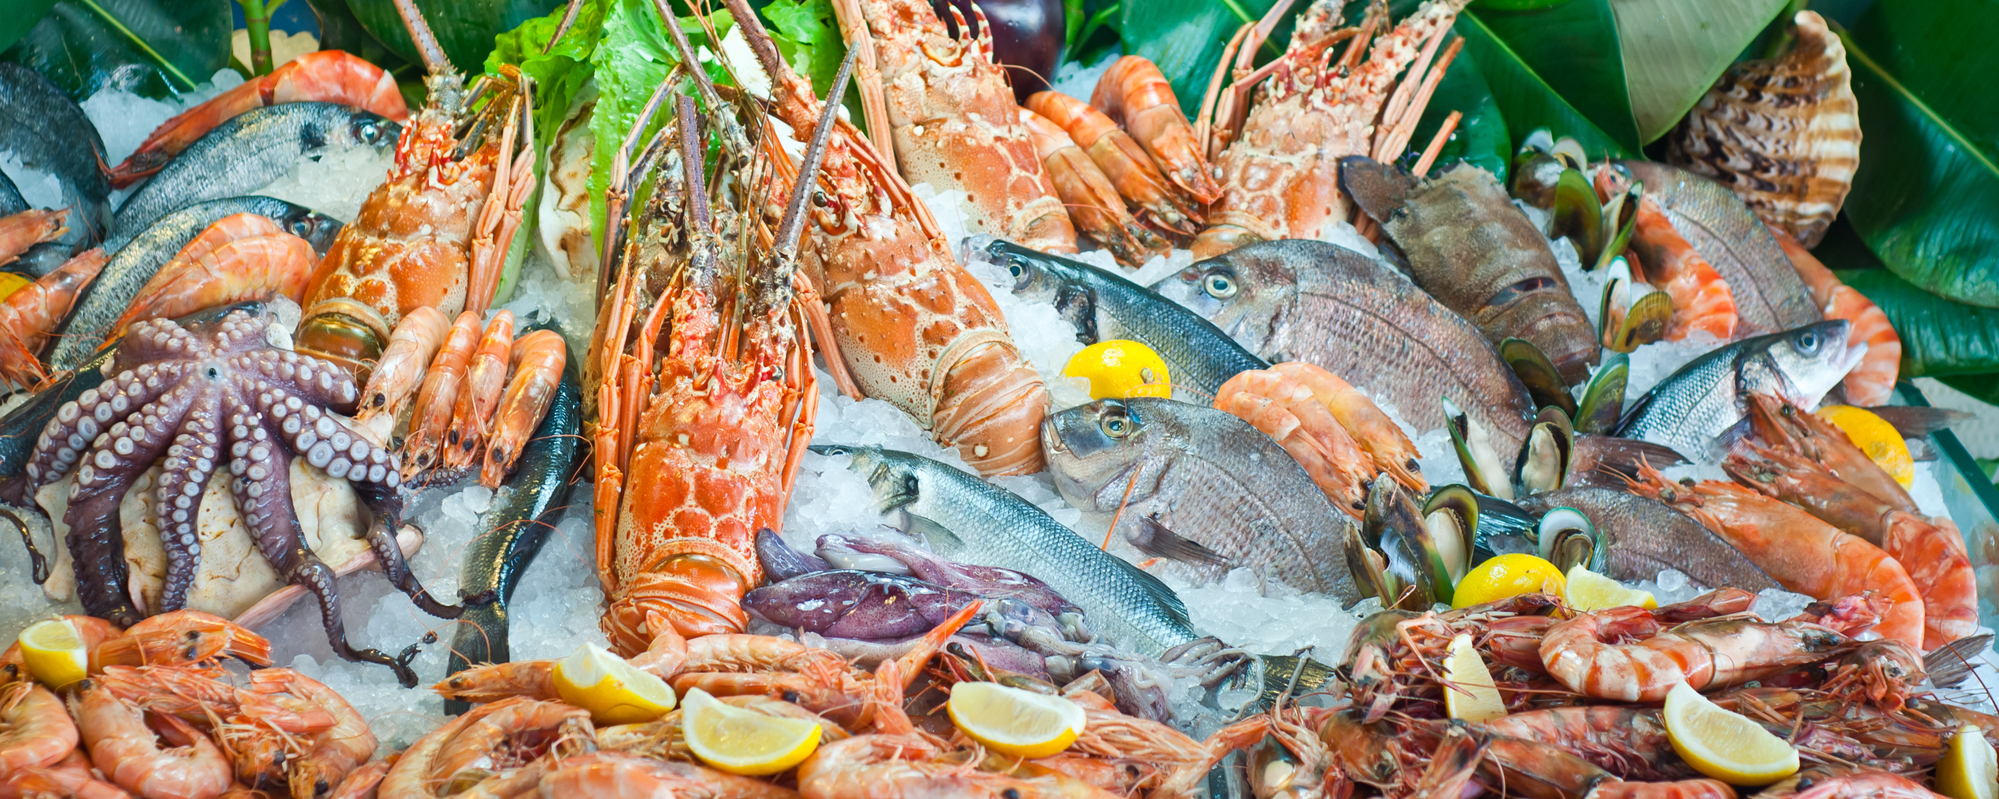 Ученые выяснили, сколько микропластика в рыбе и морепродуктах